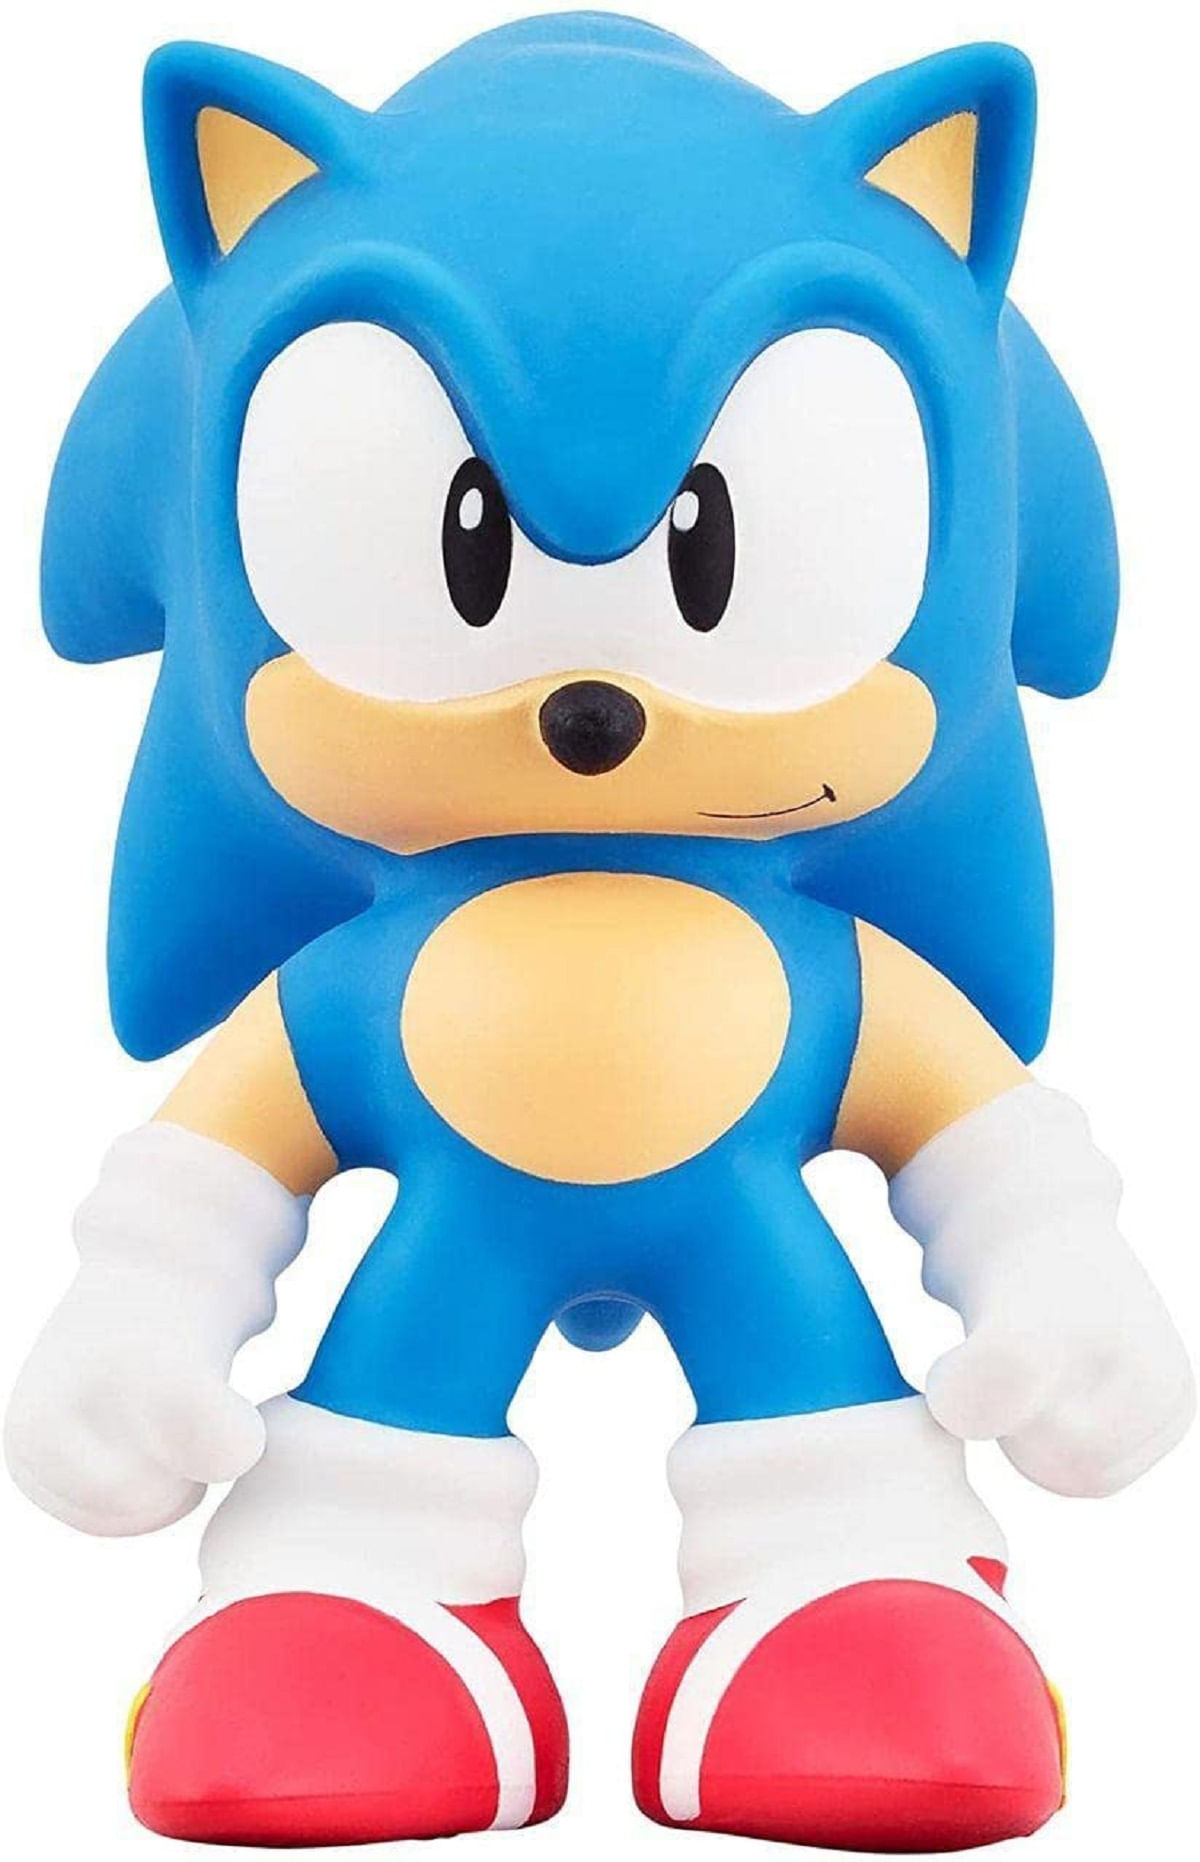 Boneco,Personagem,Sonic - Escorrega o Preço